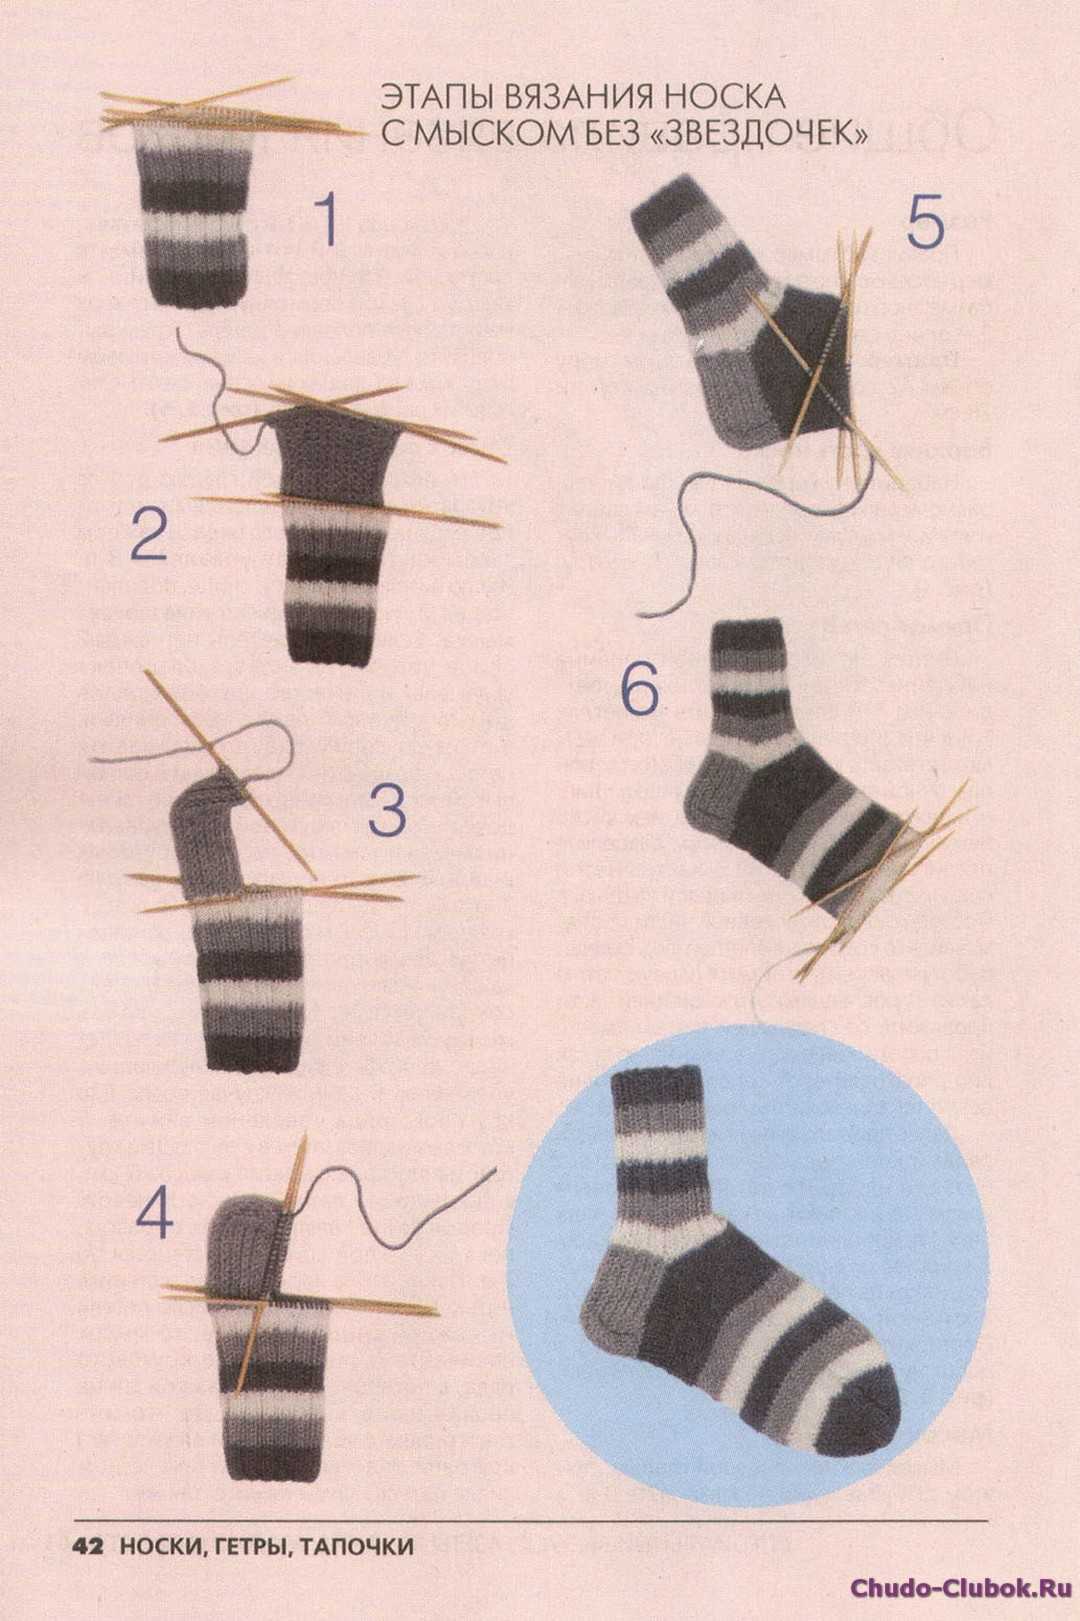 Вязка носков на 5 спицах